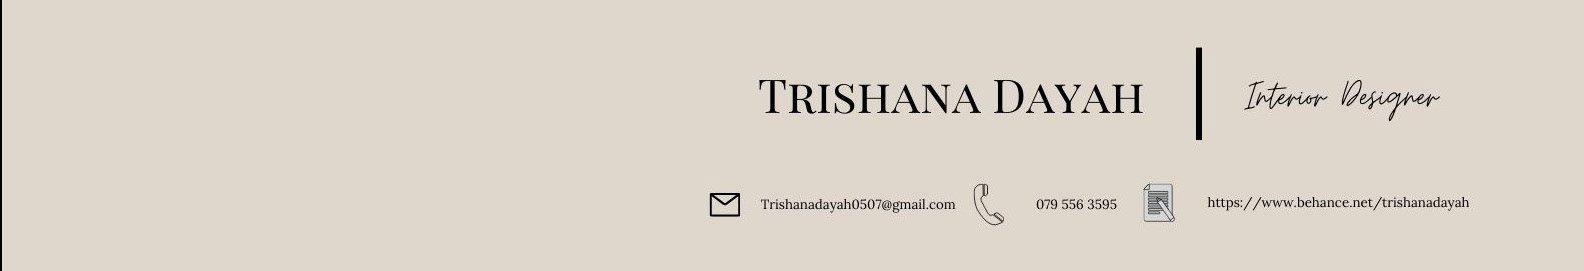 Profil-Banner von Trishana Dayah